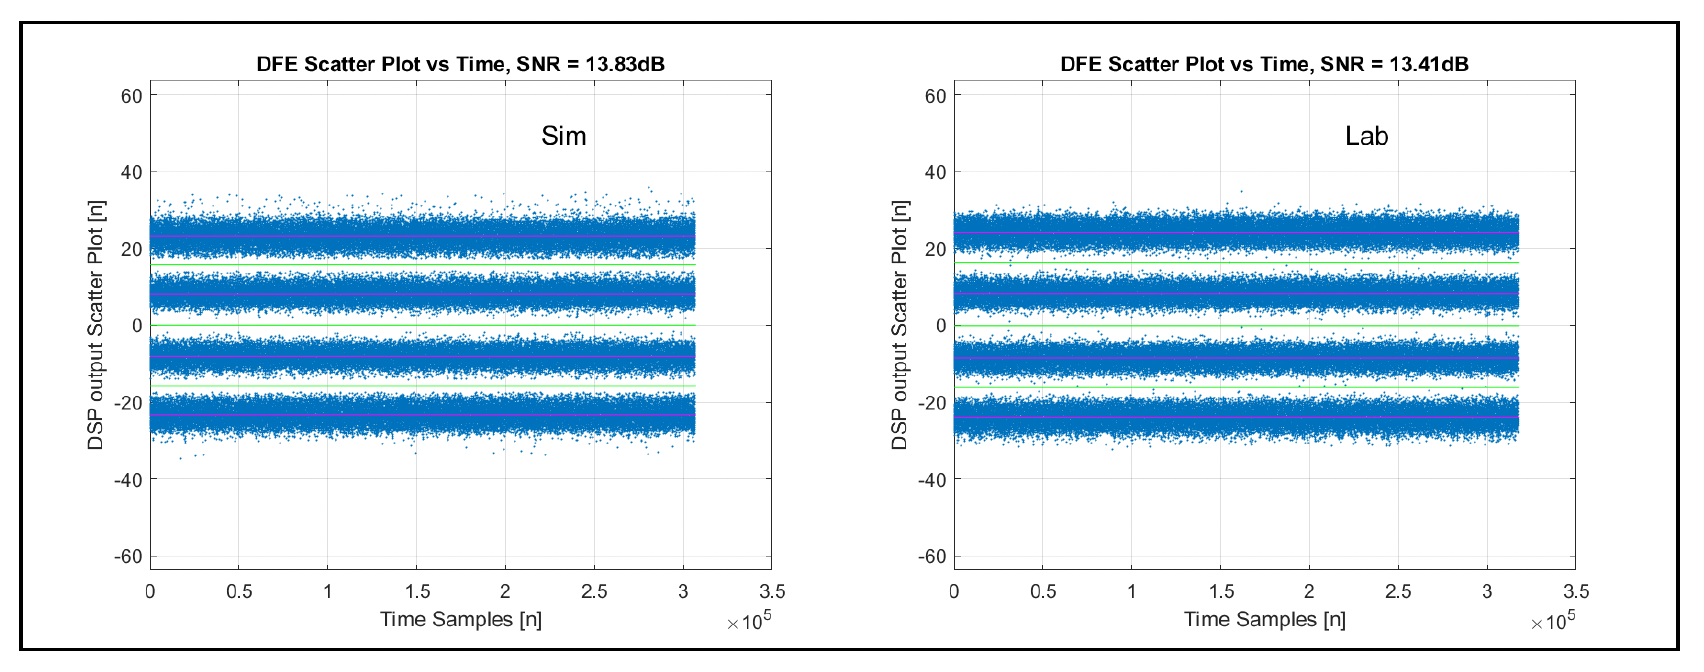 Simülasyon ve silikon DFE çıkışı dağılım grafiği 1.6 Tb/sn Dönemi